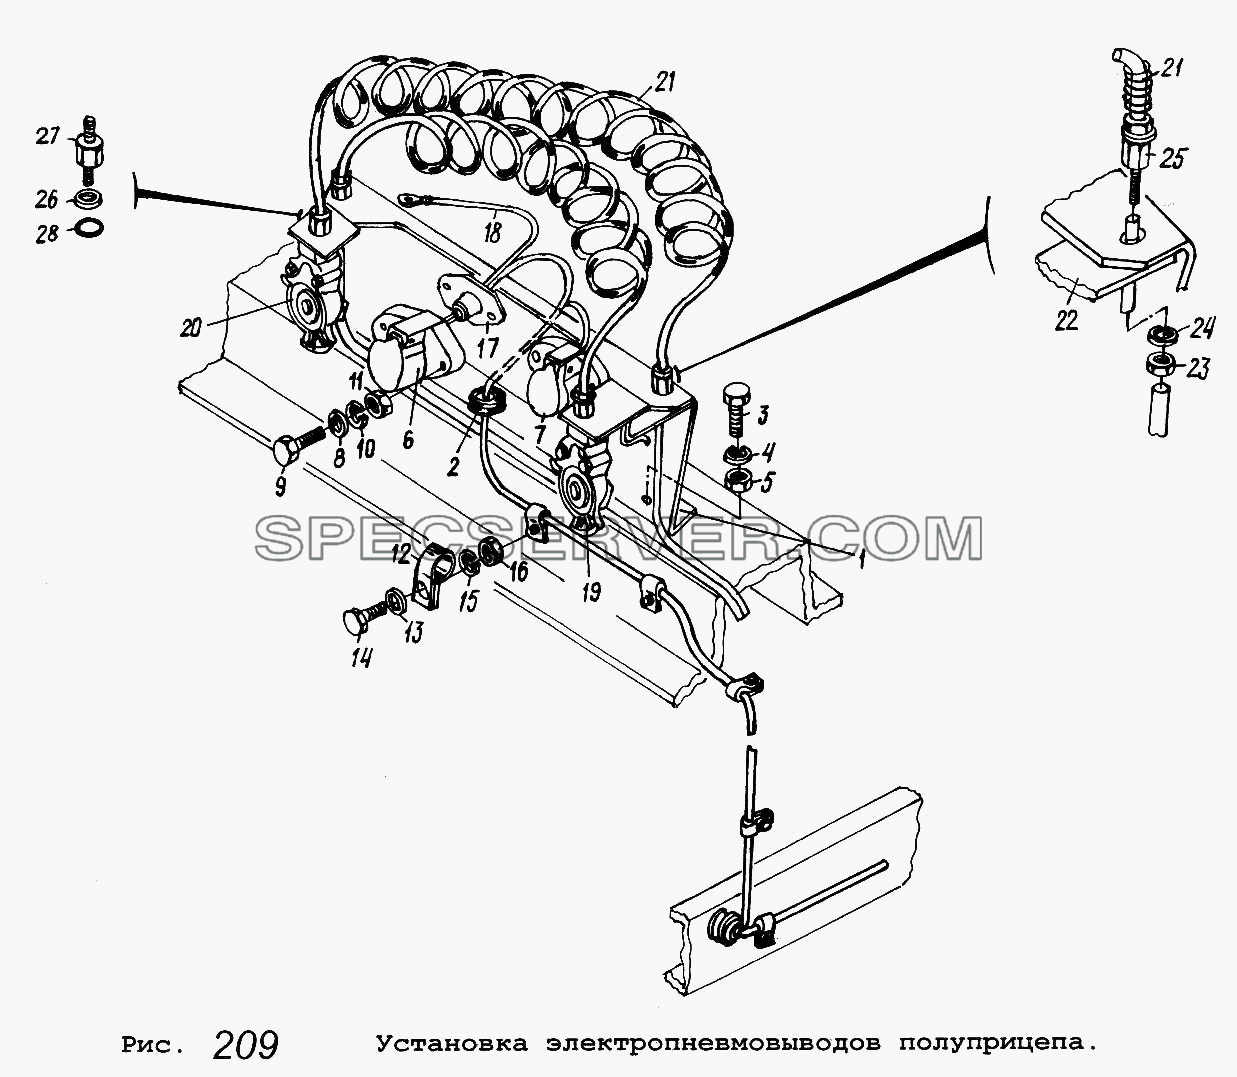 Установка электропневмовыводов полуприцепа для МАЗ-5337 (список запасных частей)